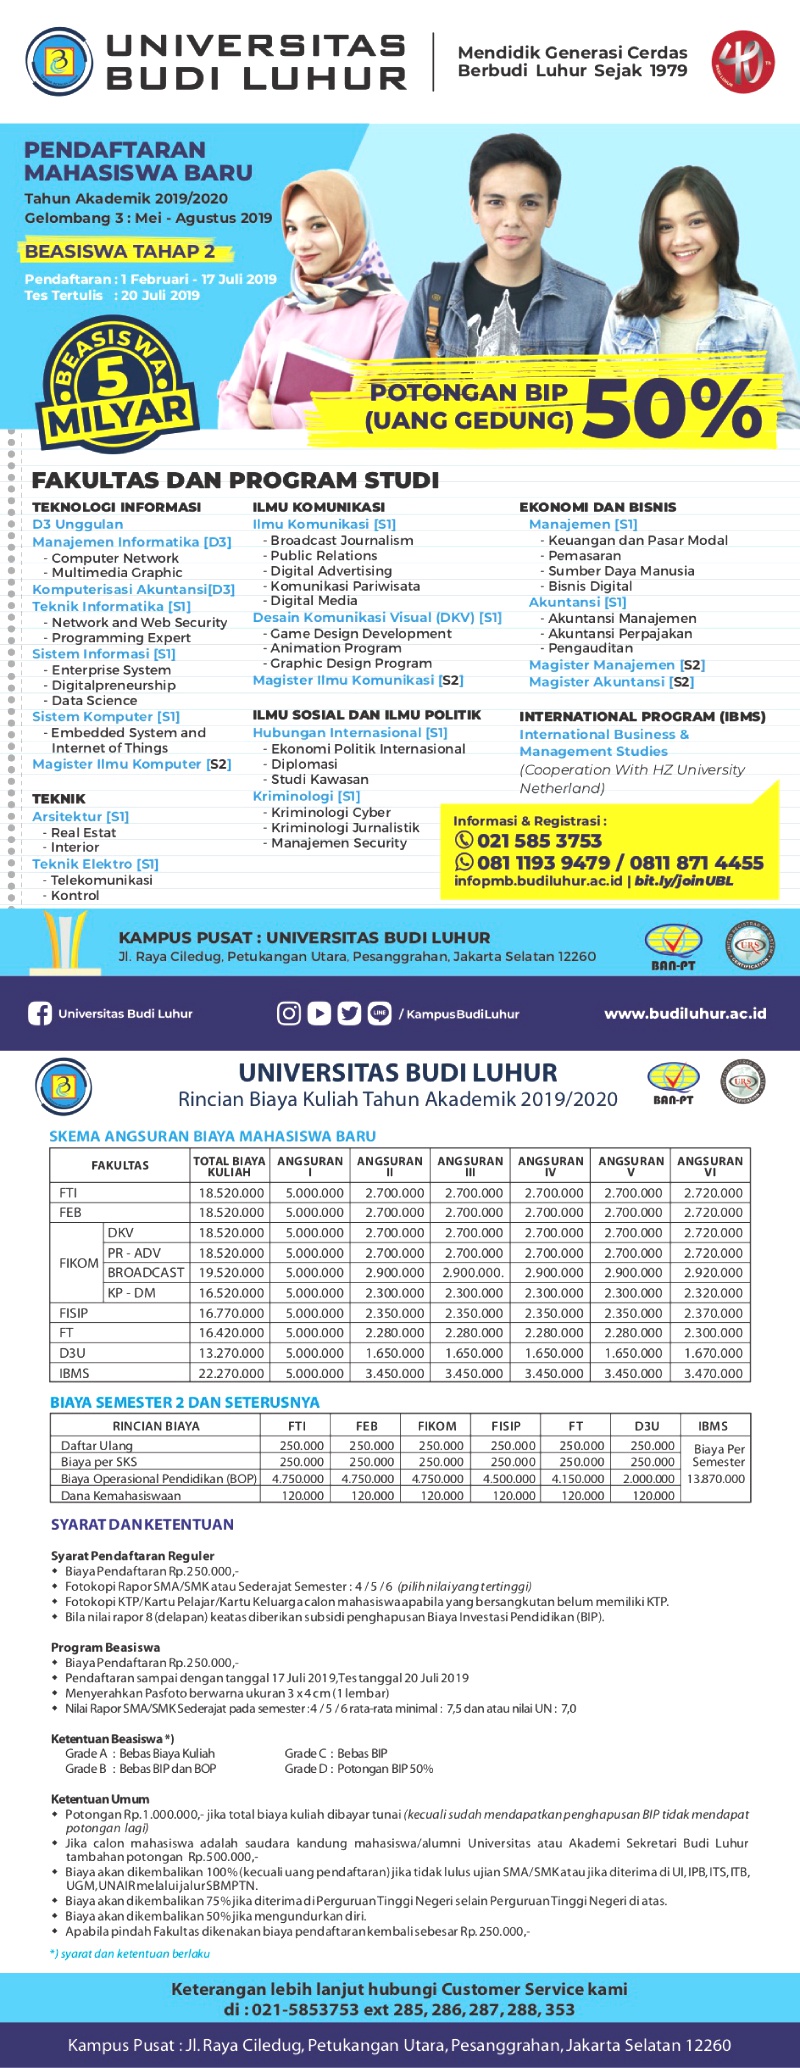 Rincian Biaya Pendaftaran Masuk Universitas Budi Luhur 2019 2020 Info Penerimaan Mahasiswa Baru Universitas Budi Luhur